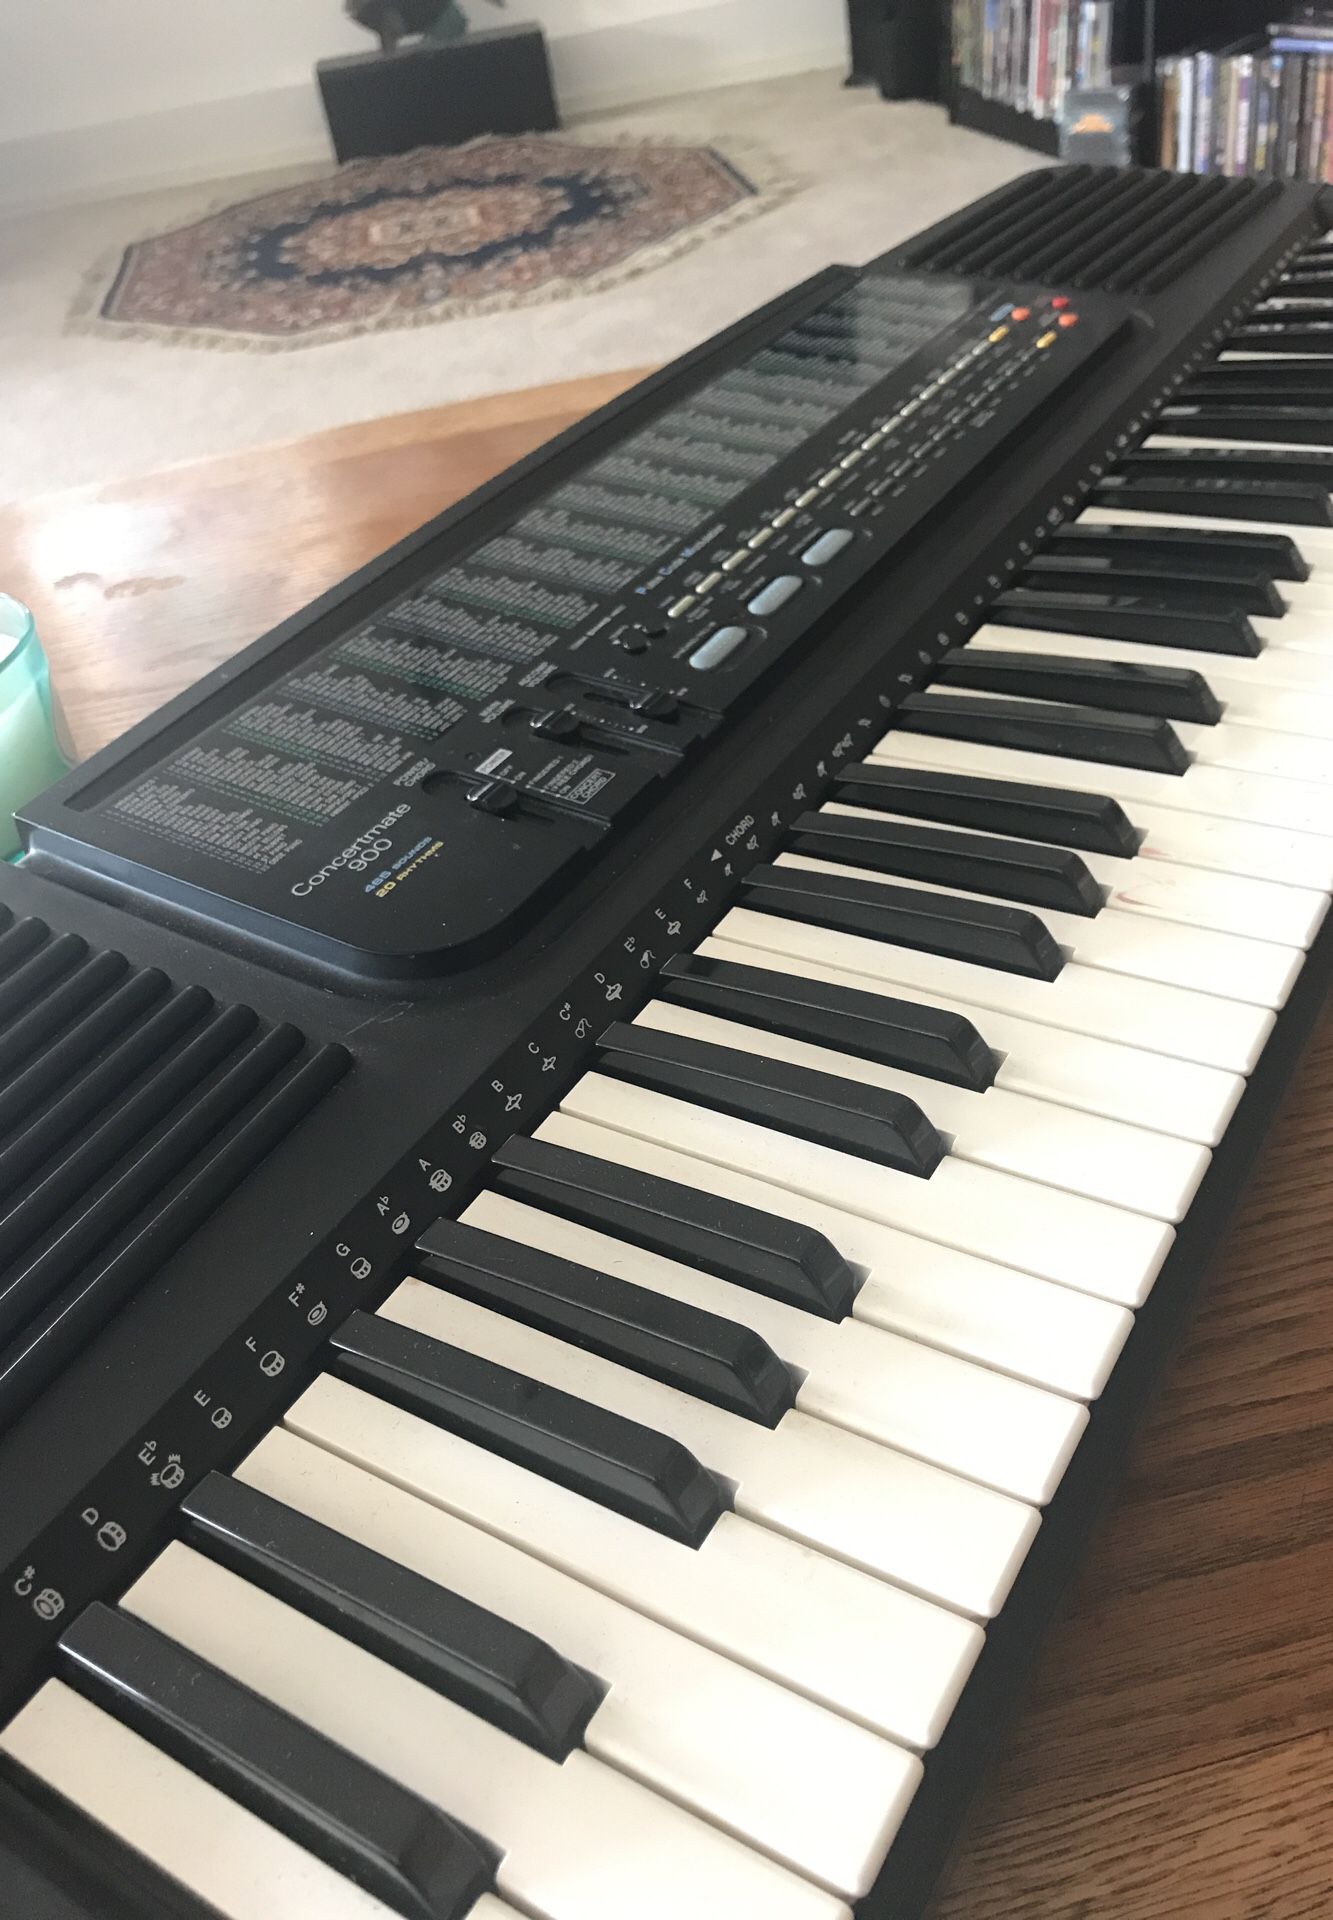 Concertmate 900 keyboard